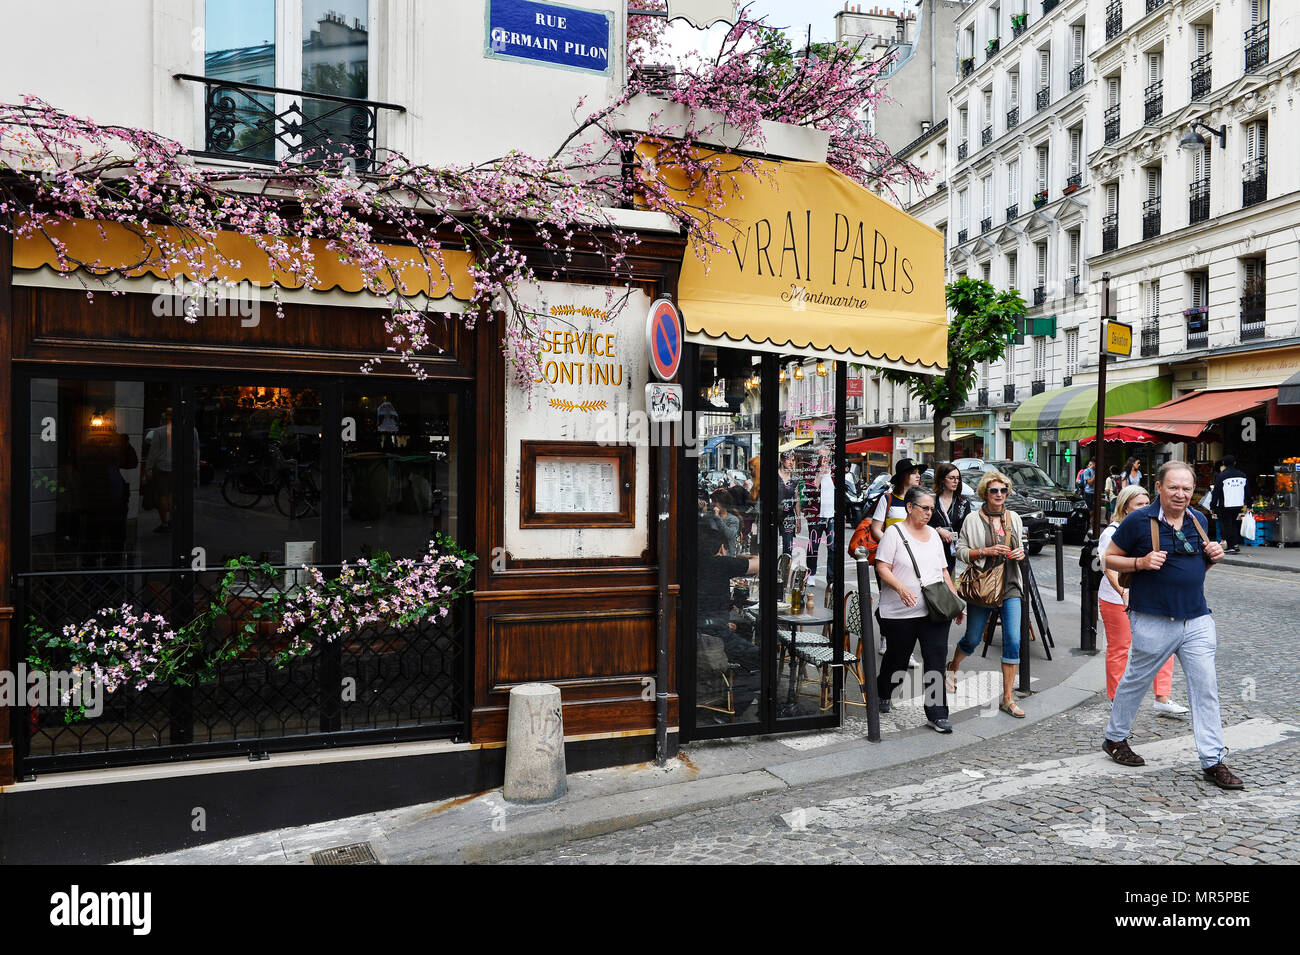 Café le Vrai Paris - Rue des Abbesses - Montmartre - Paris - France Stock Photo